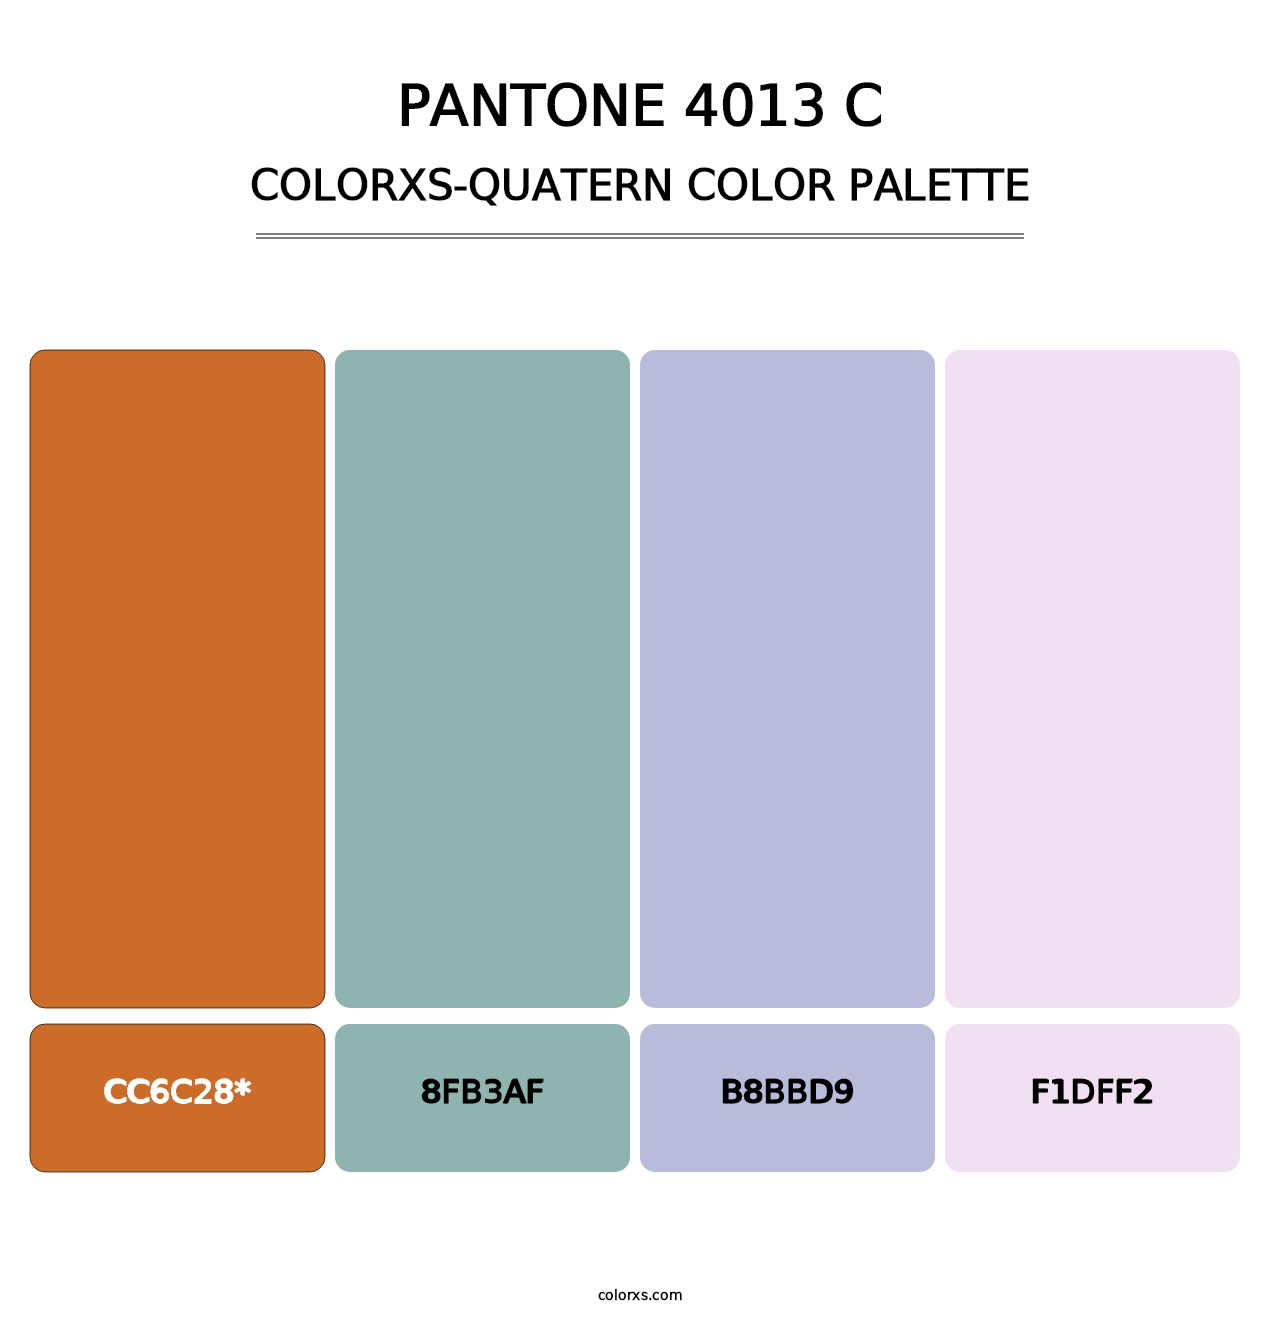 PANTONE 4013 C - Colorxs Quatern Palette